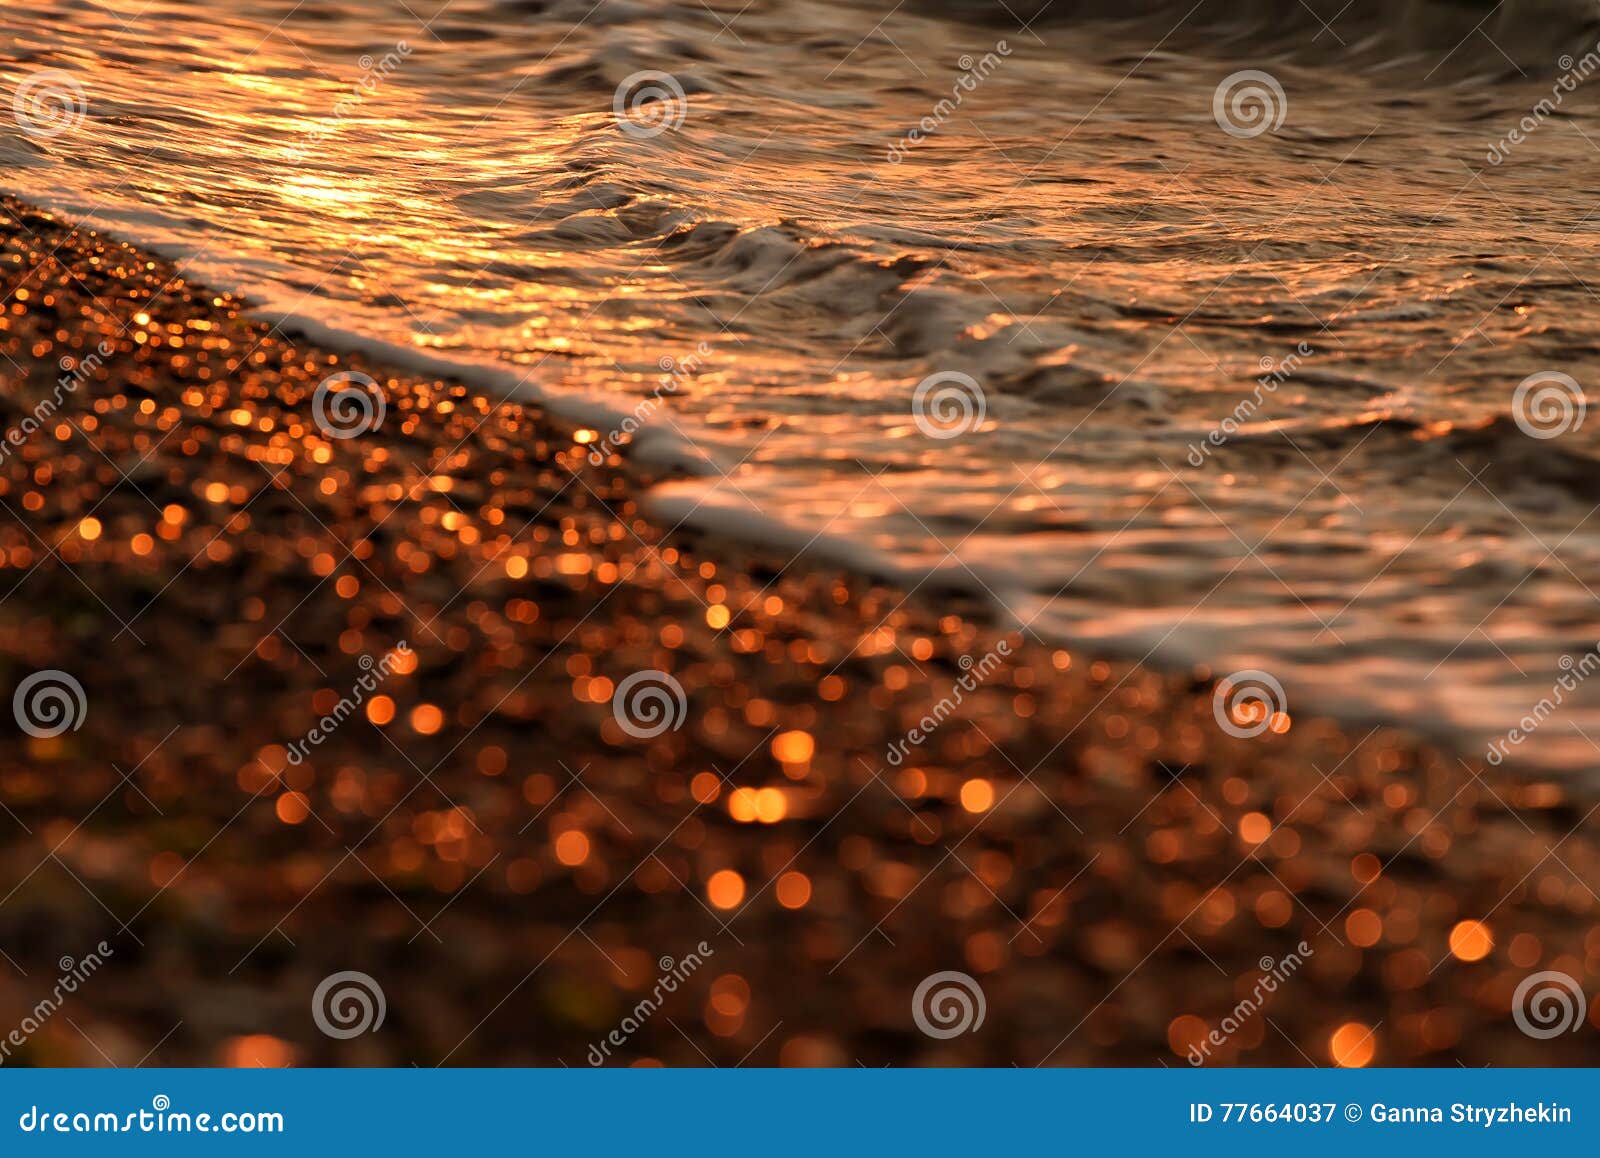 Foto Artistica Del Mare Di Mattina In Tonalita Di Oro Immagine Stock Immagine Di Puntello Sabbia